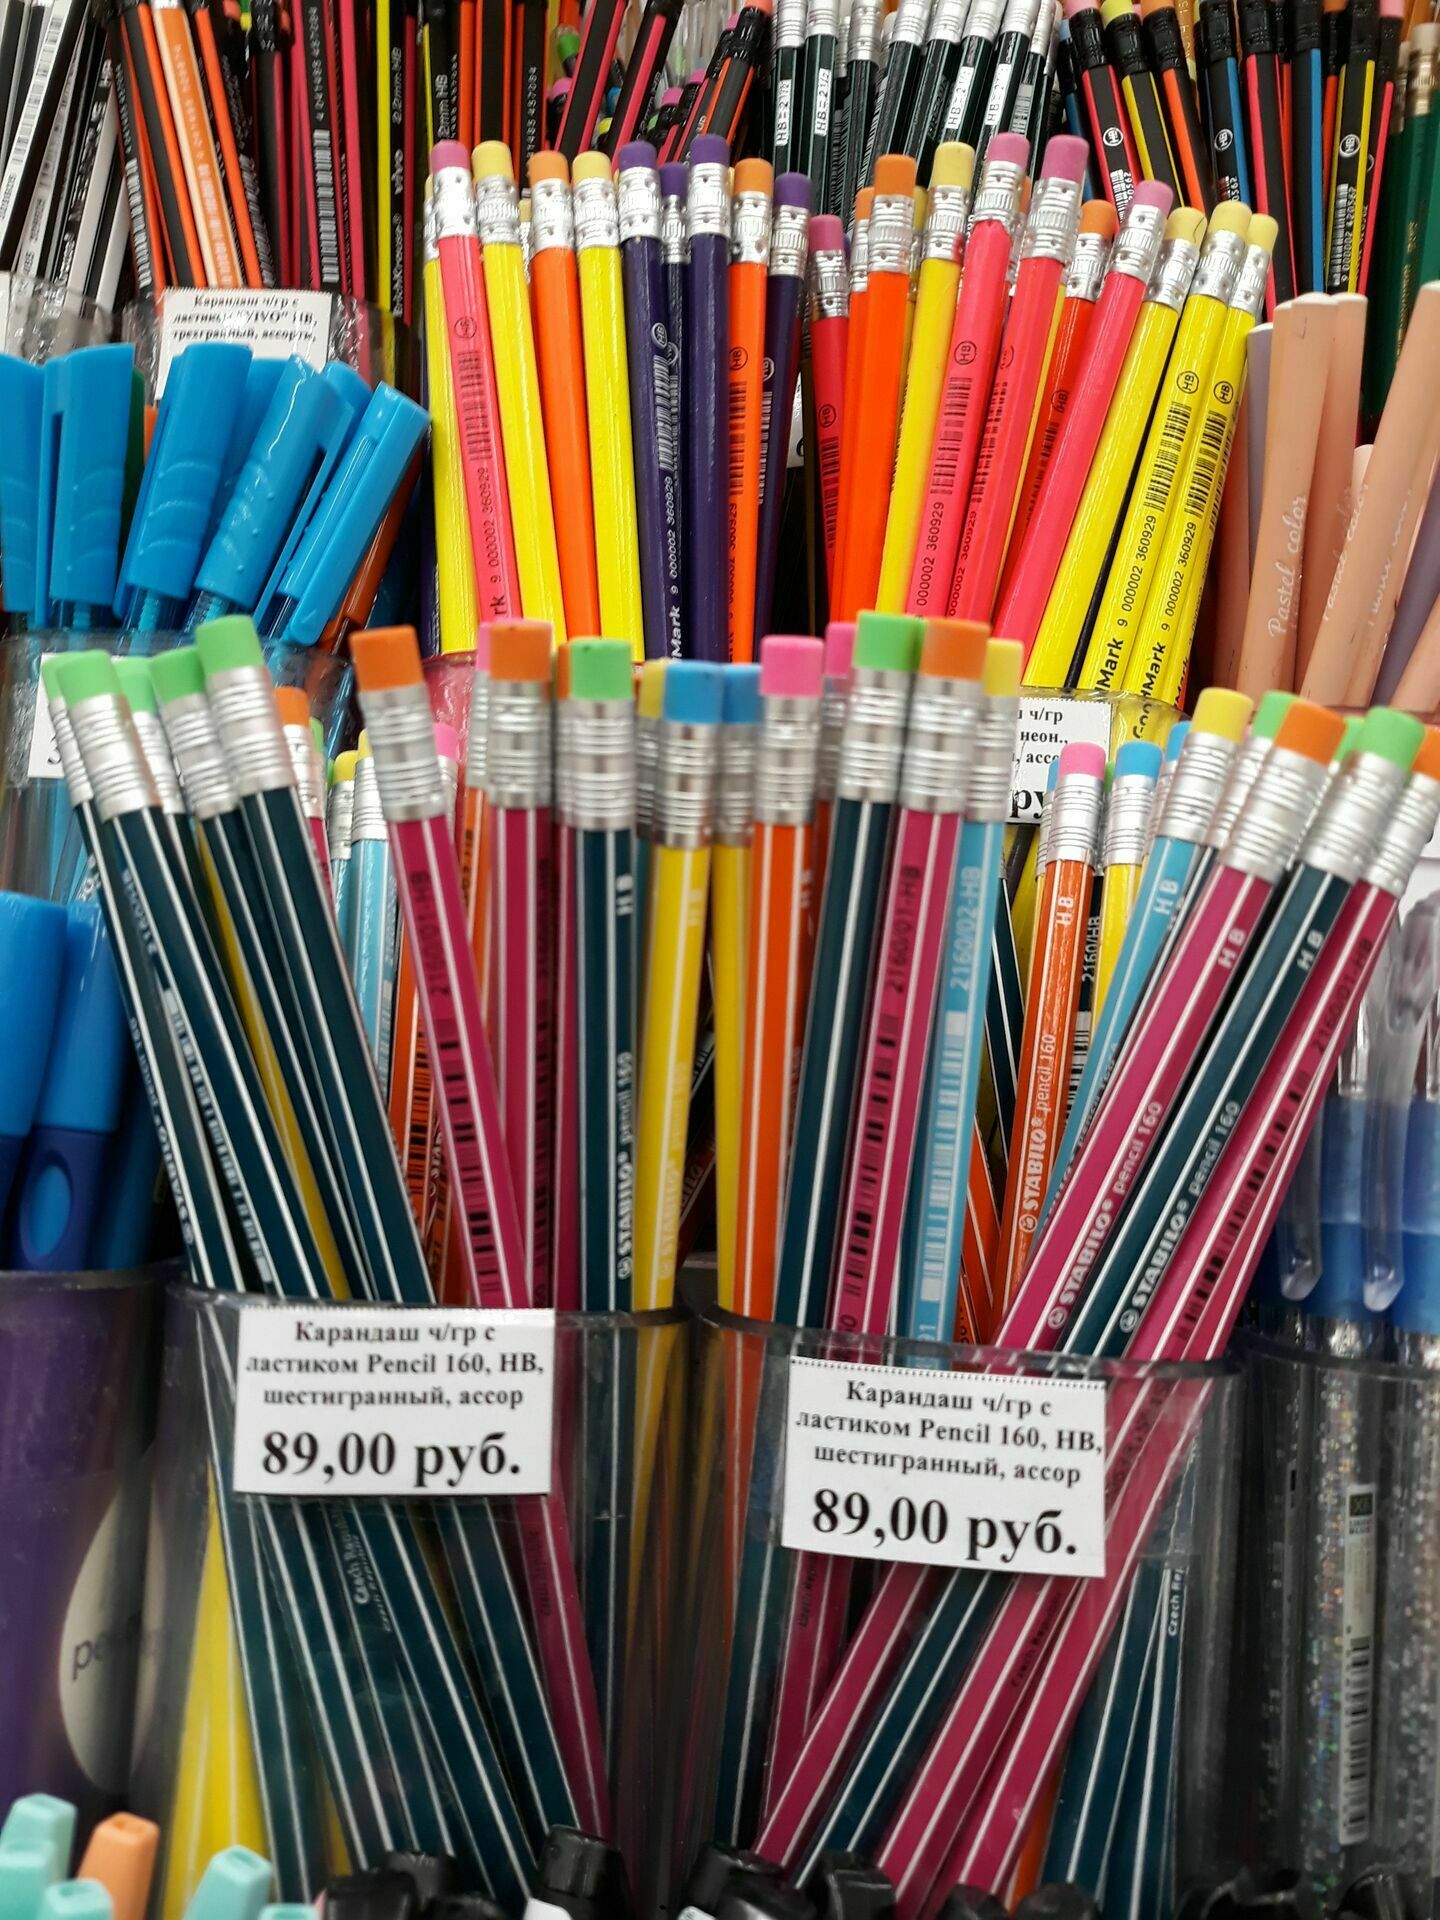 Цена одного школьного карандаша приближается к 90 рублям. Таких карандашей нужно 3-4. На первое время.